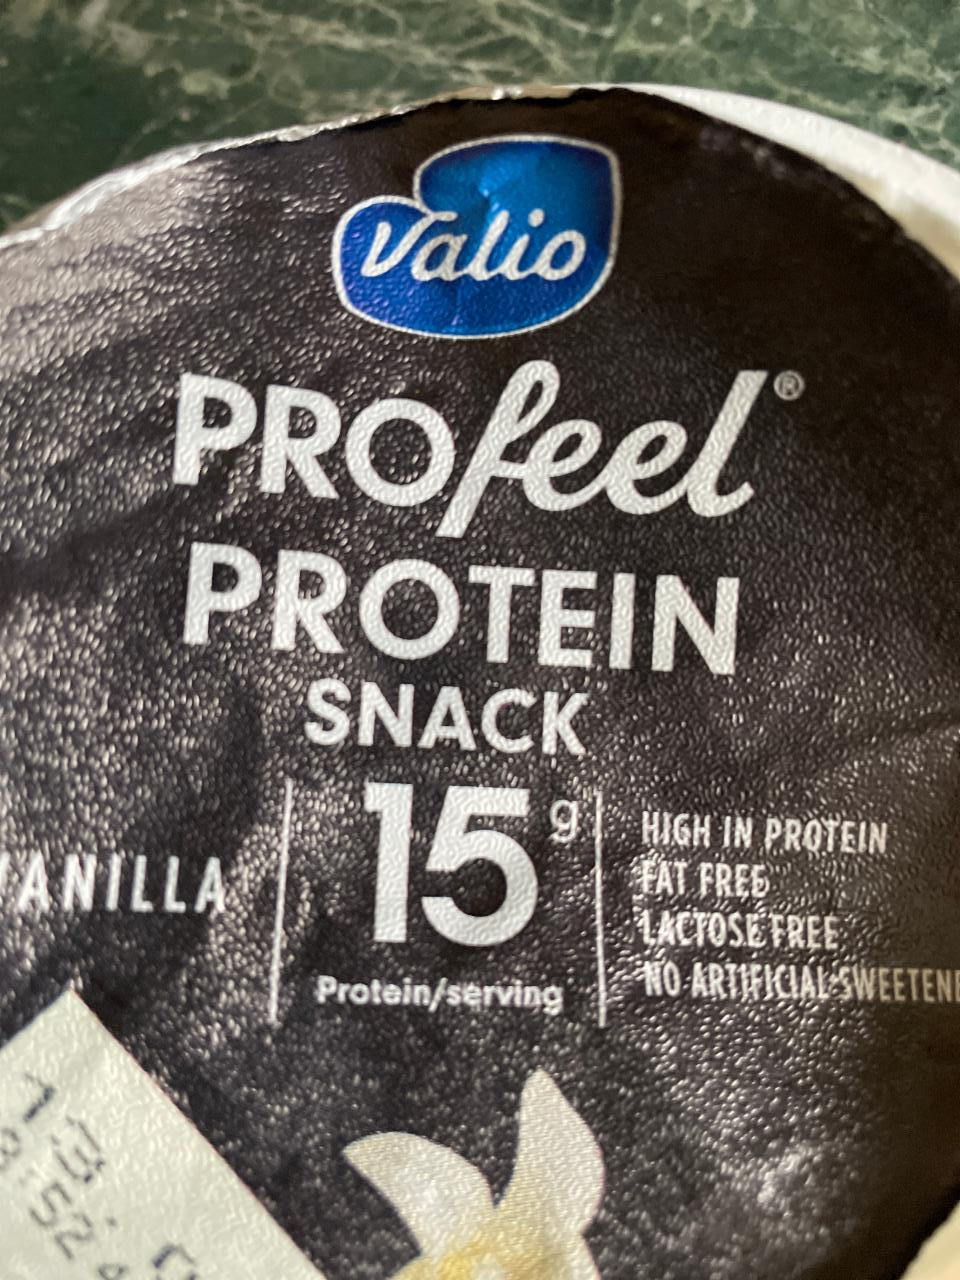 Фото - Profeel Protein Snack Vanilla 15g protein Valio